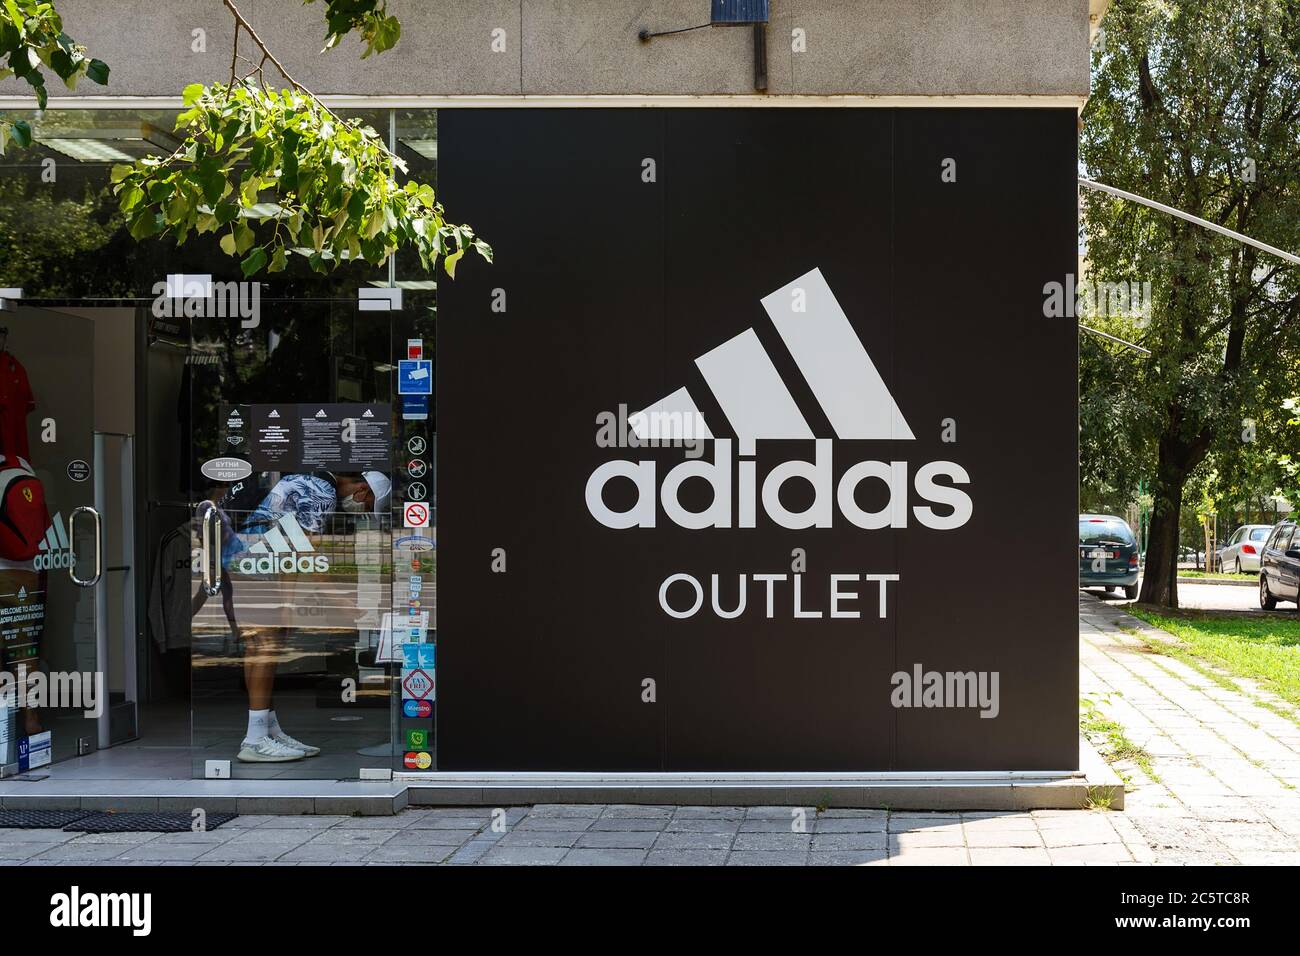 01 de julio de 2020. a la tienda outlet Adidas desde una calle de la ciudad en un día de verano. Cartel de logo Adidas signo de brend